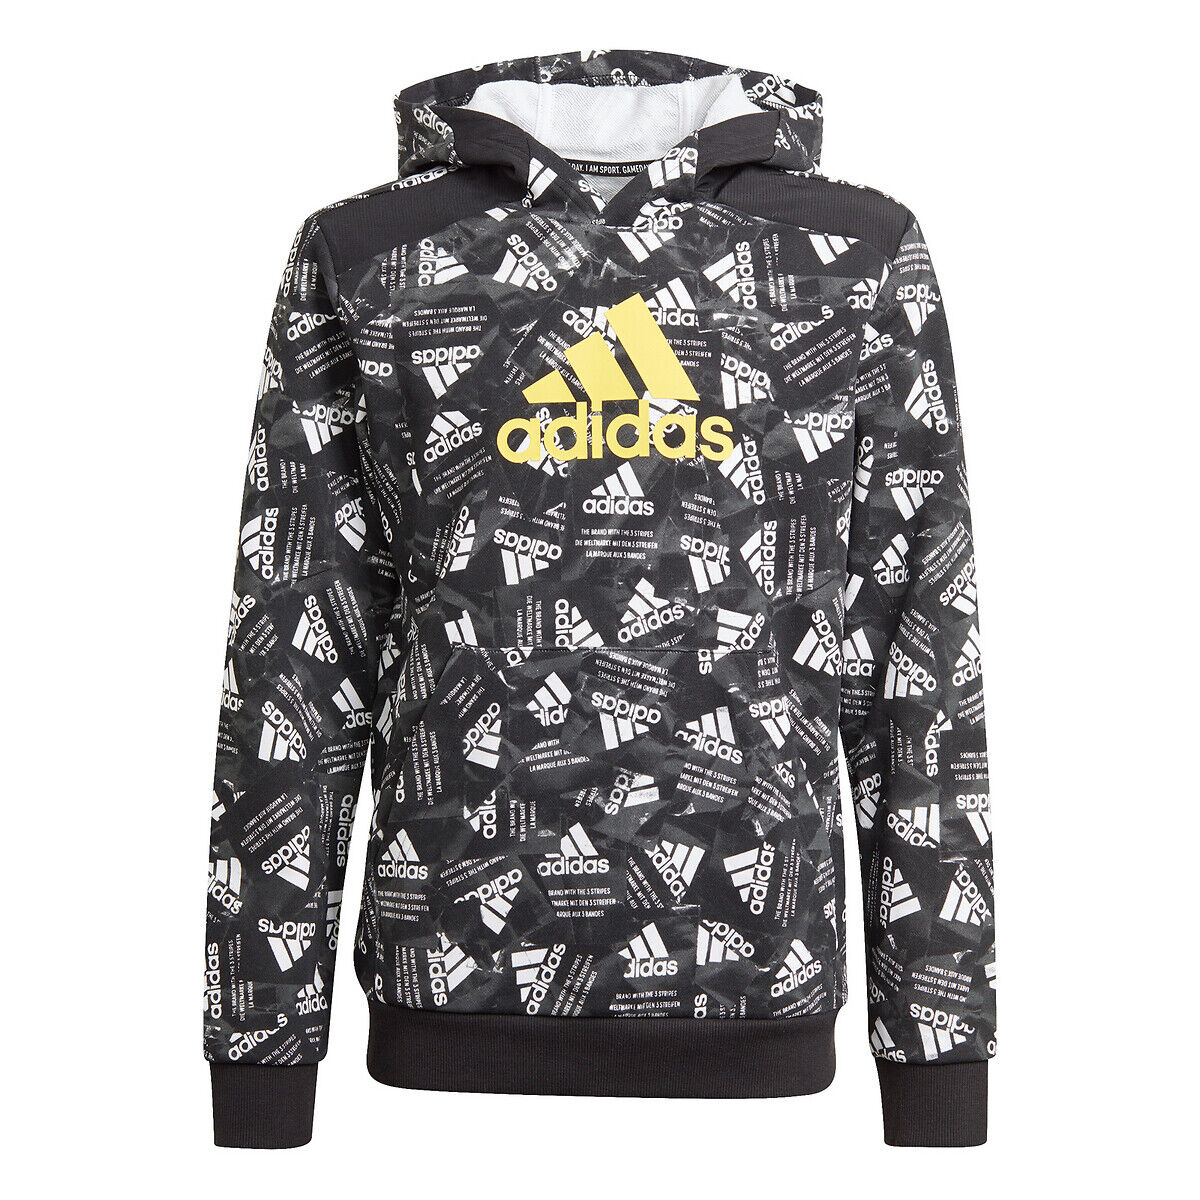 Adidas Bedrucktes Kapuzensweatshirt 5 - 16 Jahre SCHWARZ